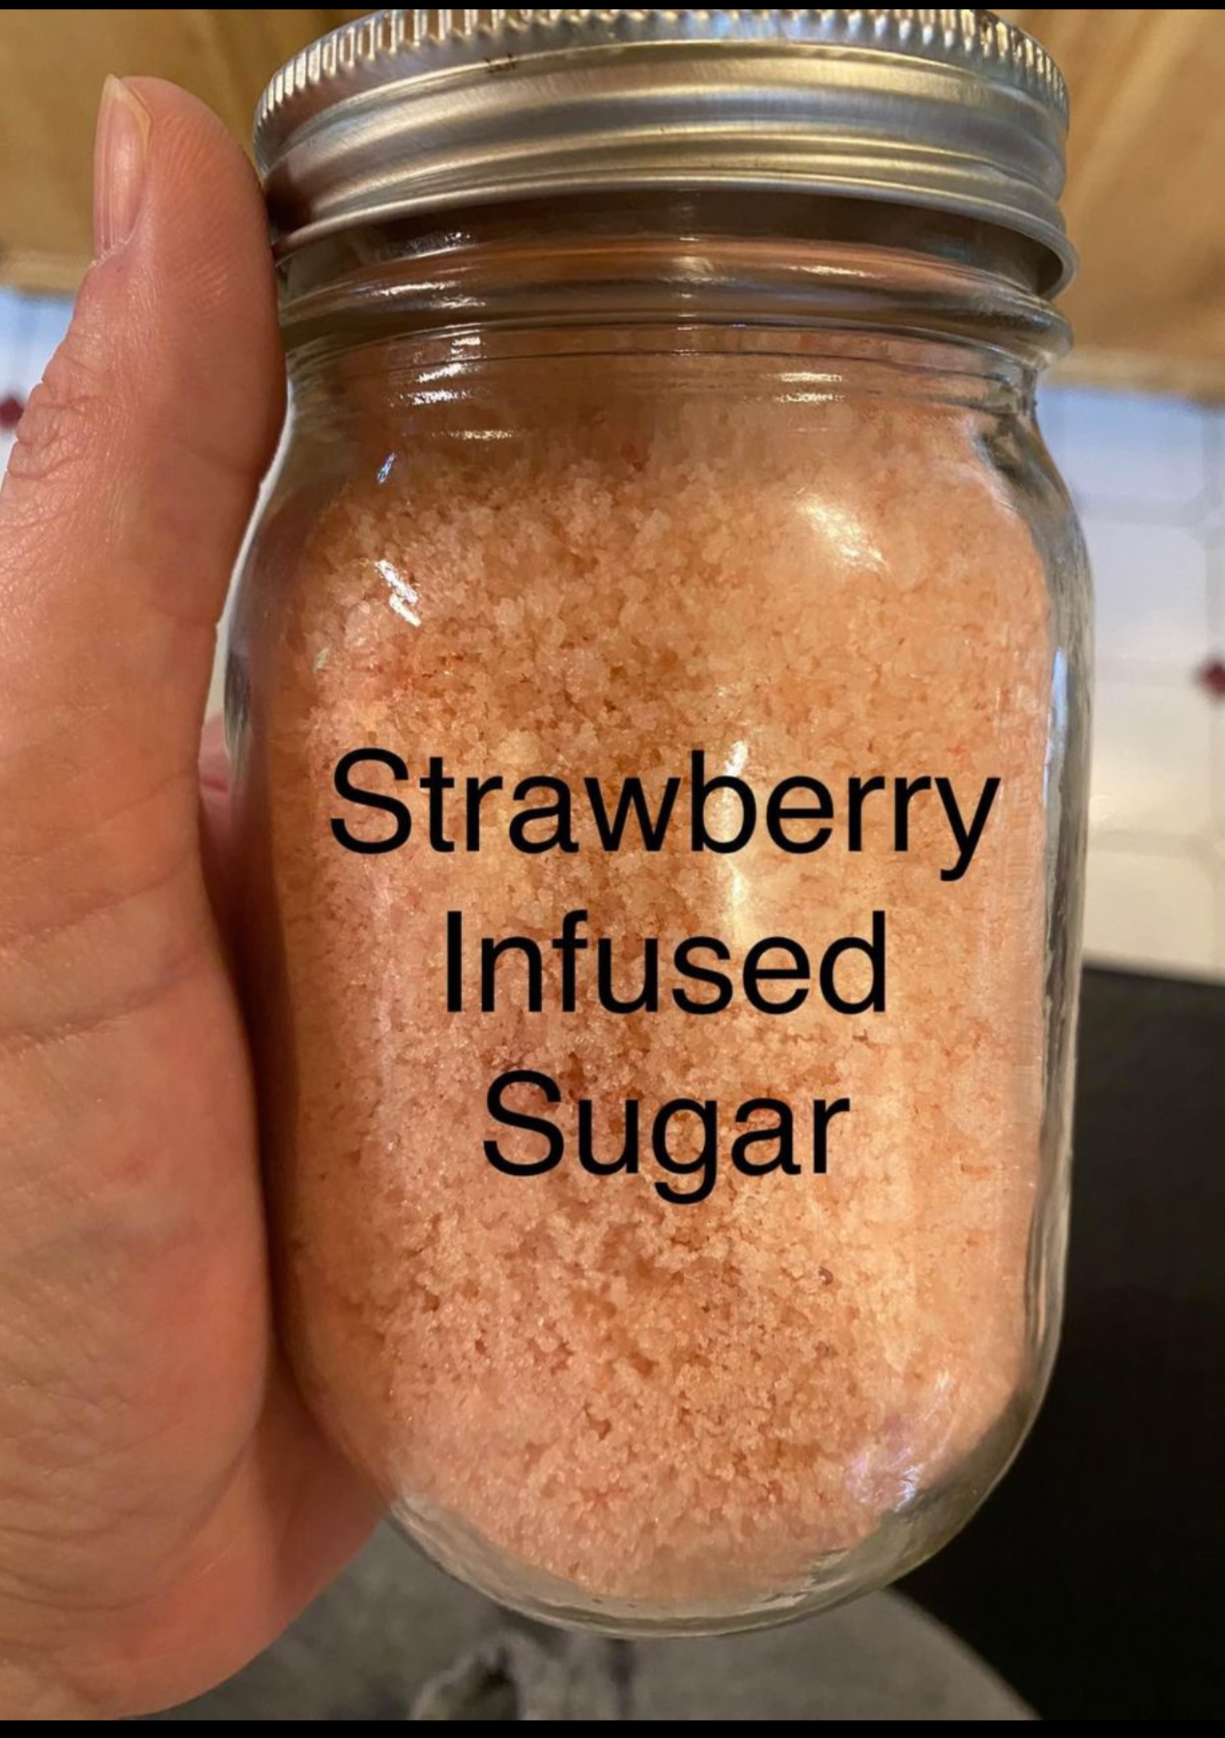 Infused sugar